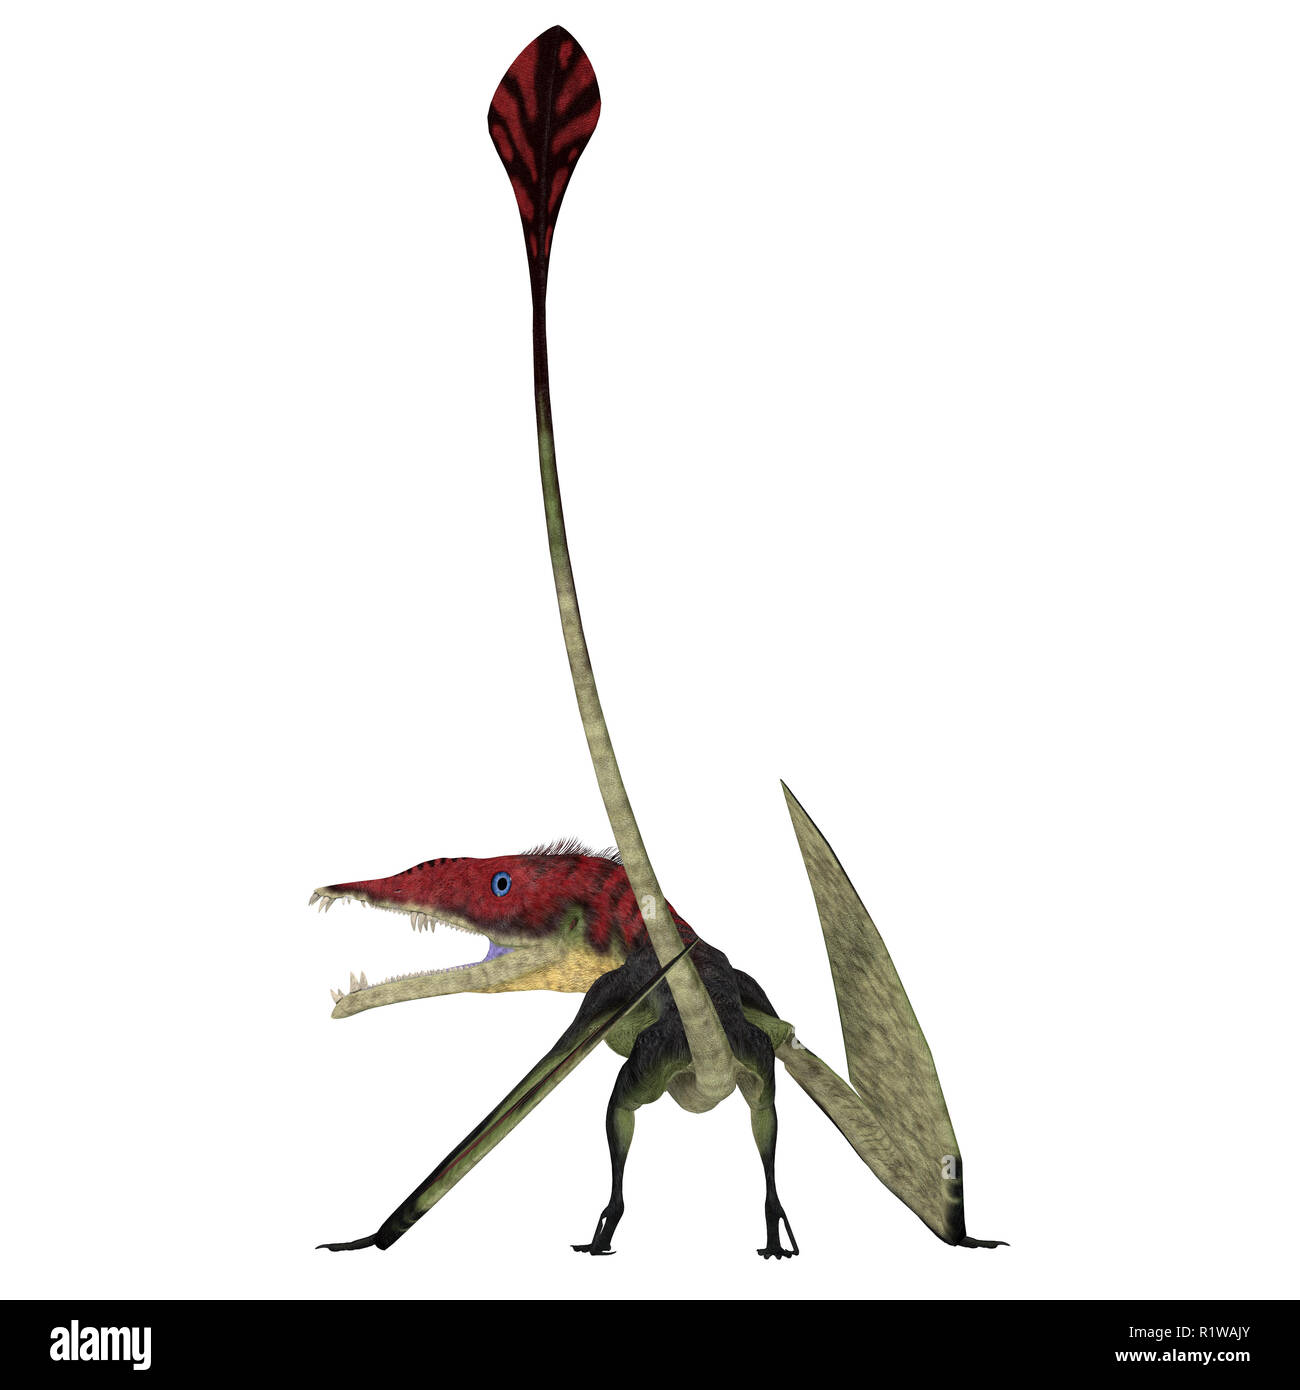 Eudimorphodon Pterosaur Schwanz - Eudimorphodon war eine fleischfressende Pterosaur Vogel, der in Italien während der Trias lebte. Stockfoto